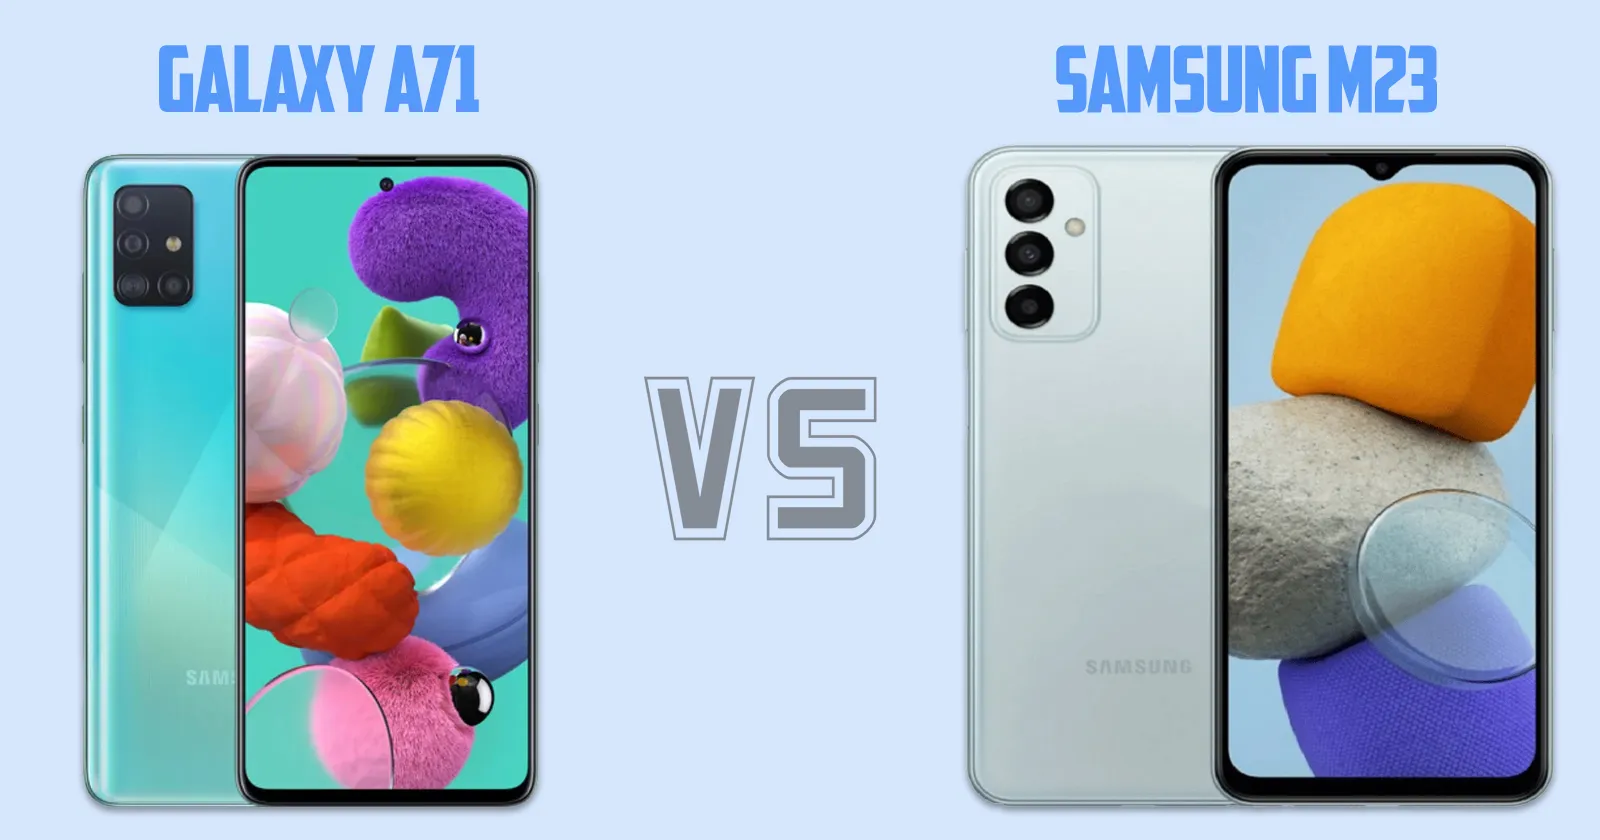 Samsung Galaxy A71 vs Samsung Galaxy M23 [ Full Comparison ]